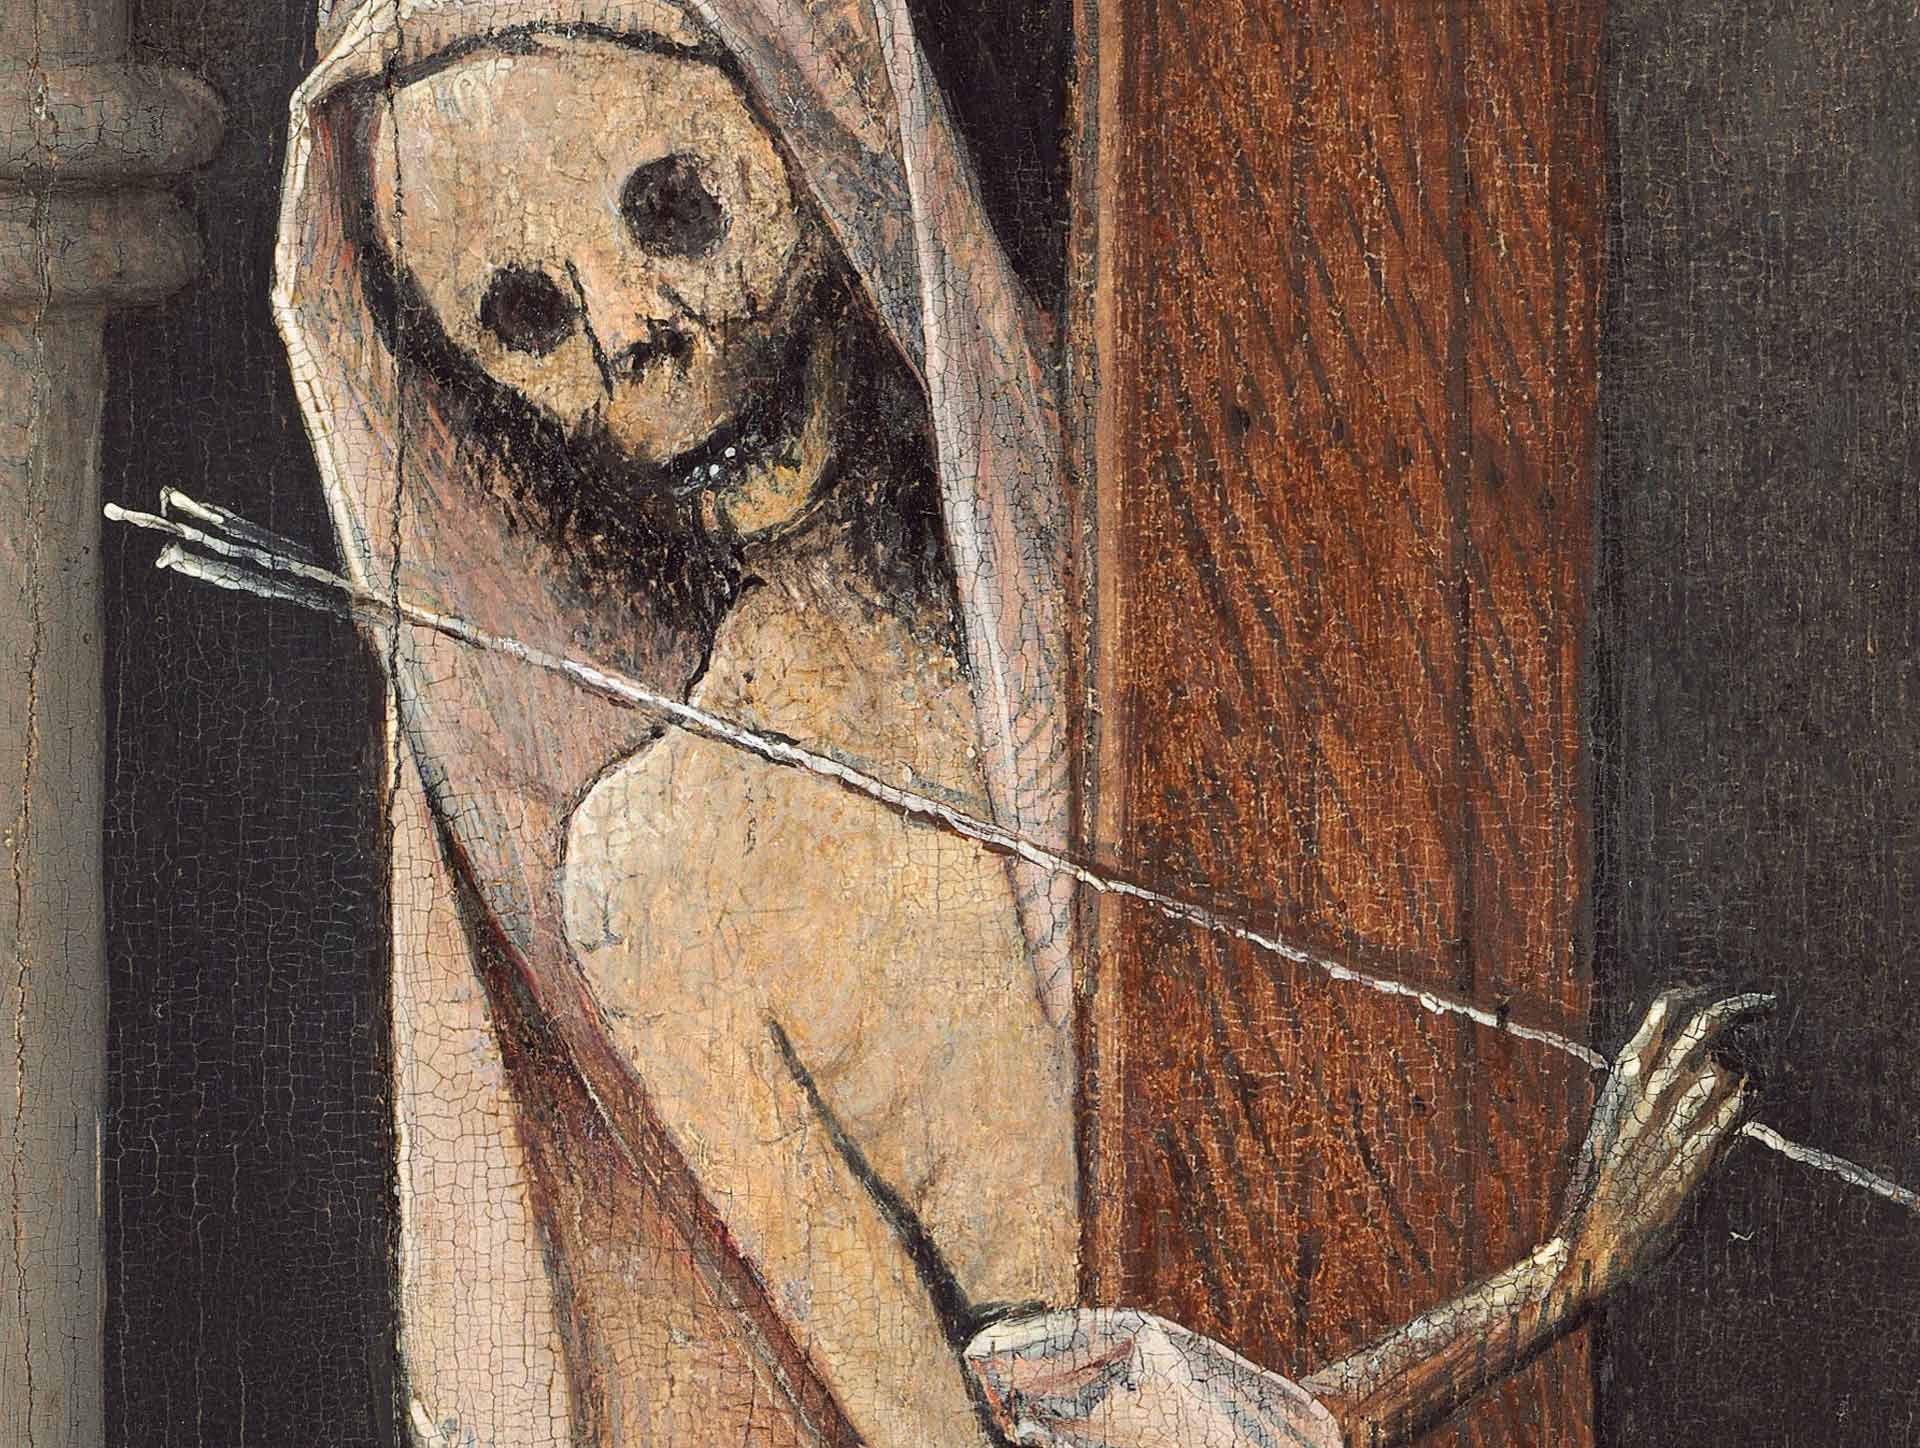 Death - Hieronymus Bosch